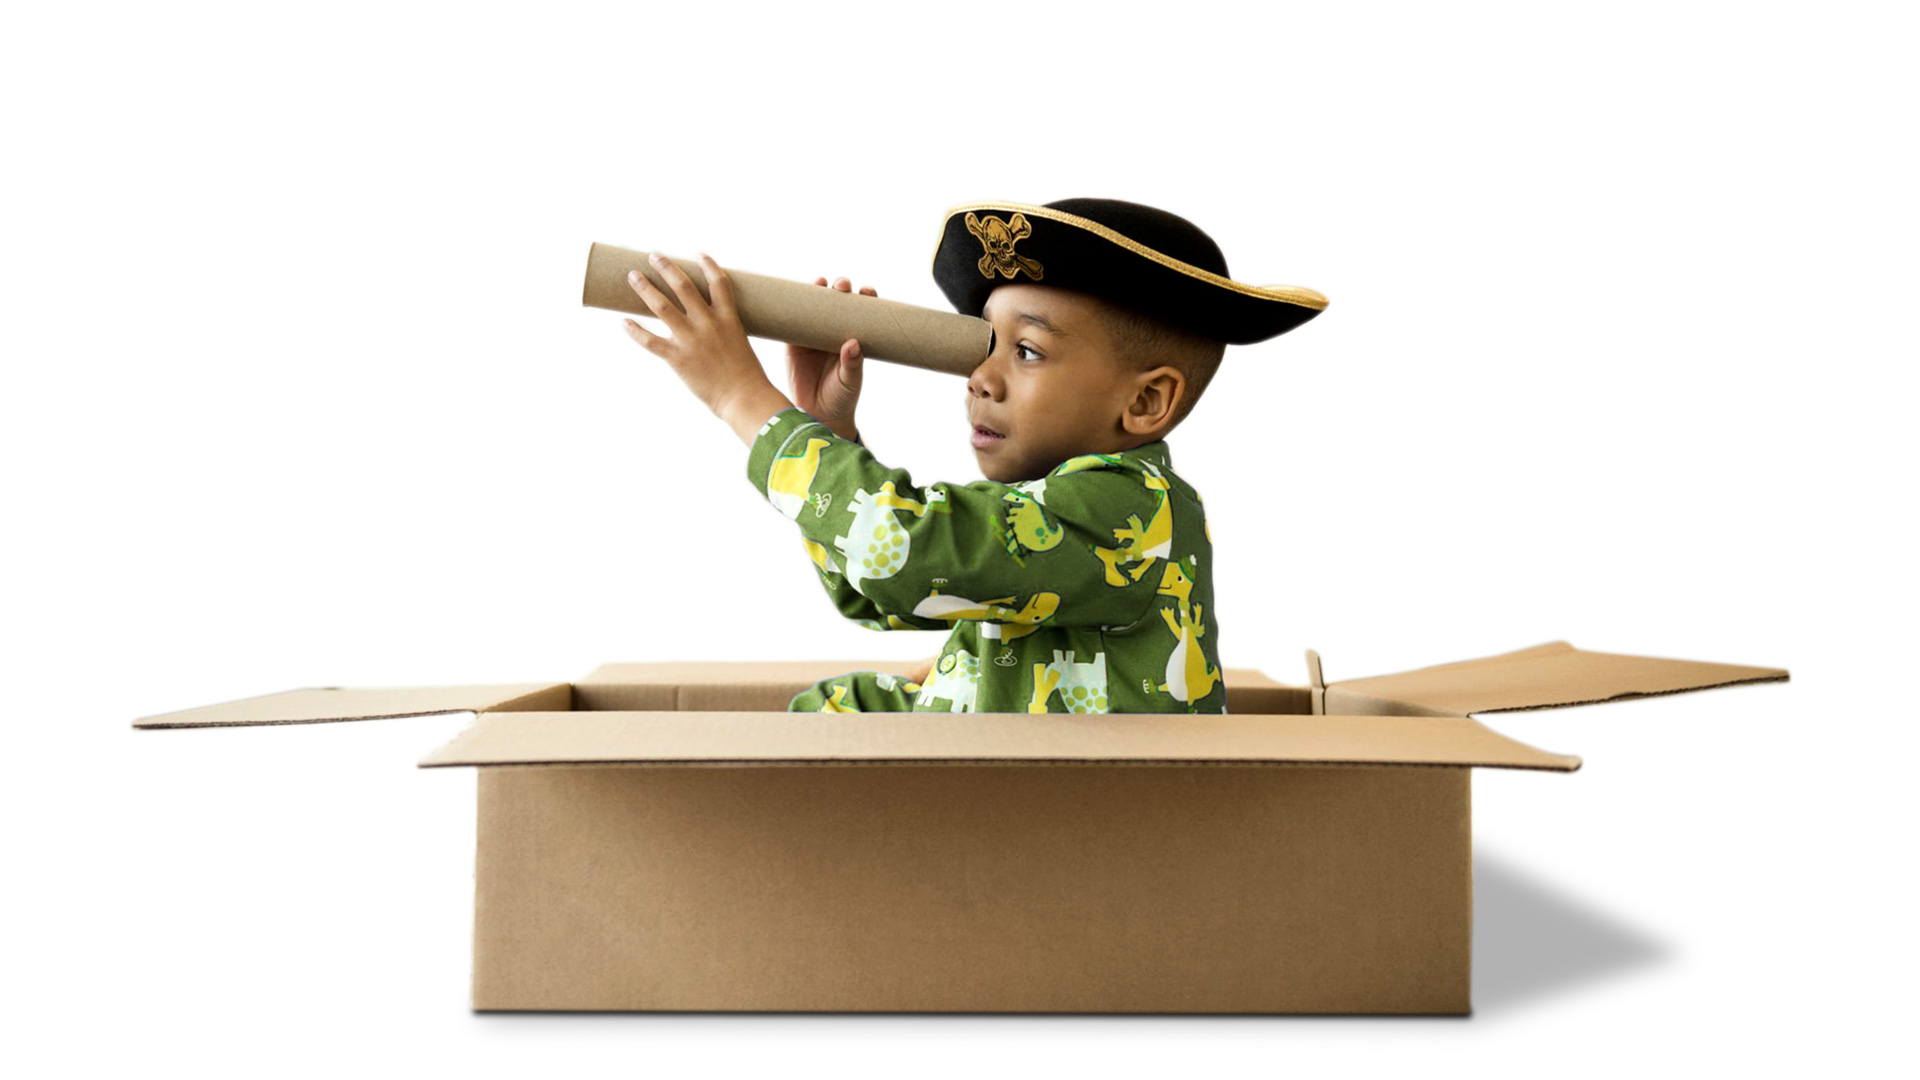 Boy playing in a cardboard box